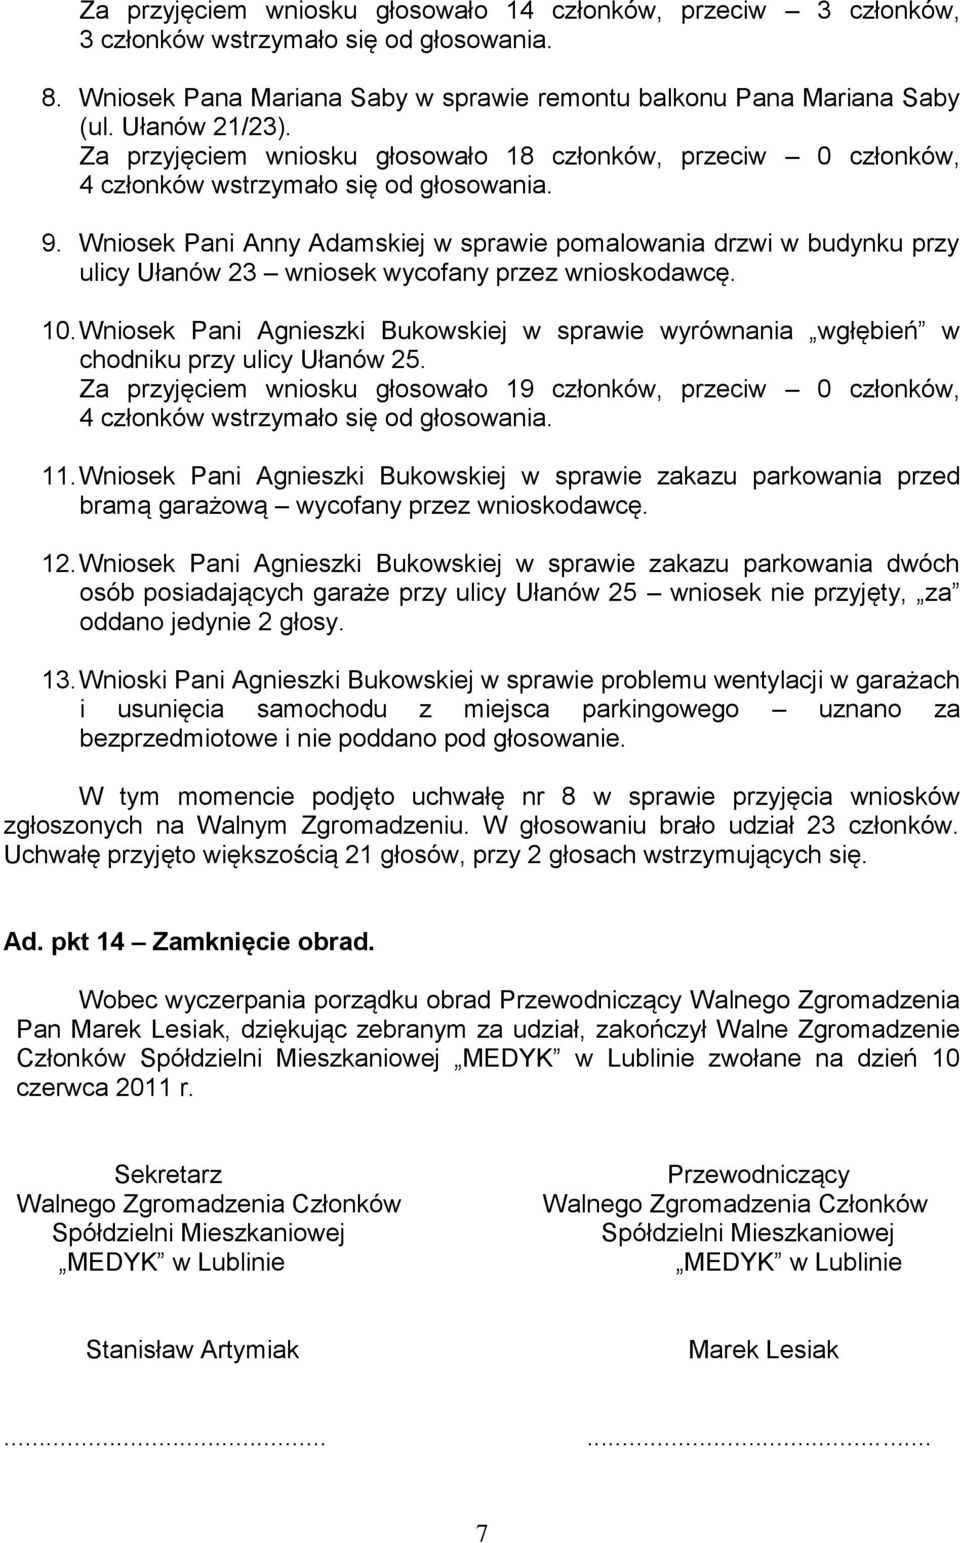 Wniosek Pani Anny Adamskiej w sprawie pomalowania drzwi w budynku przy ulicy Ułanów 23 wniosek wycofany przez wnioskodawcę. 10.